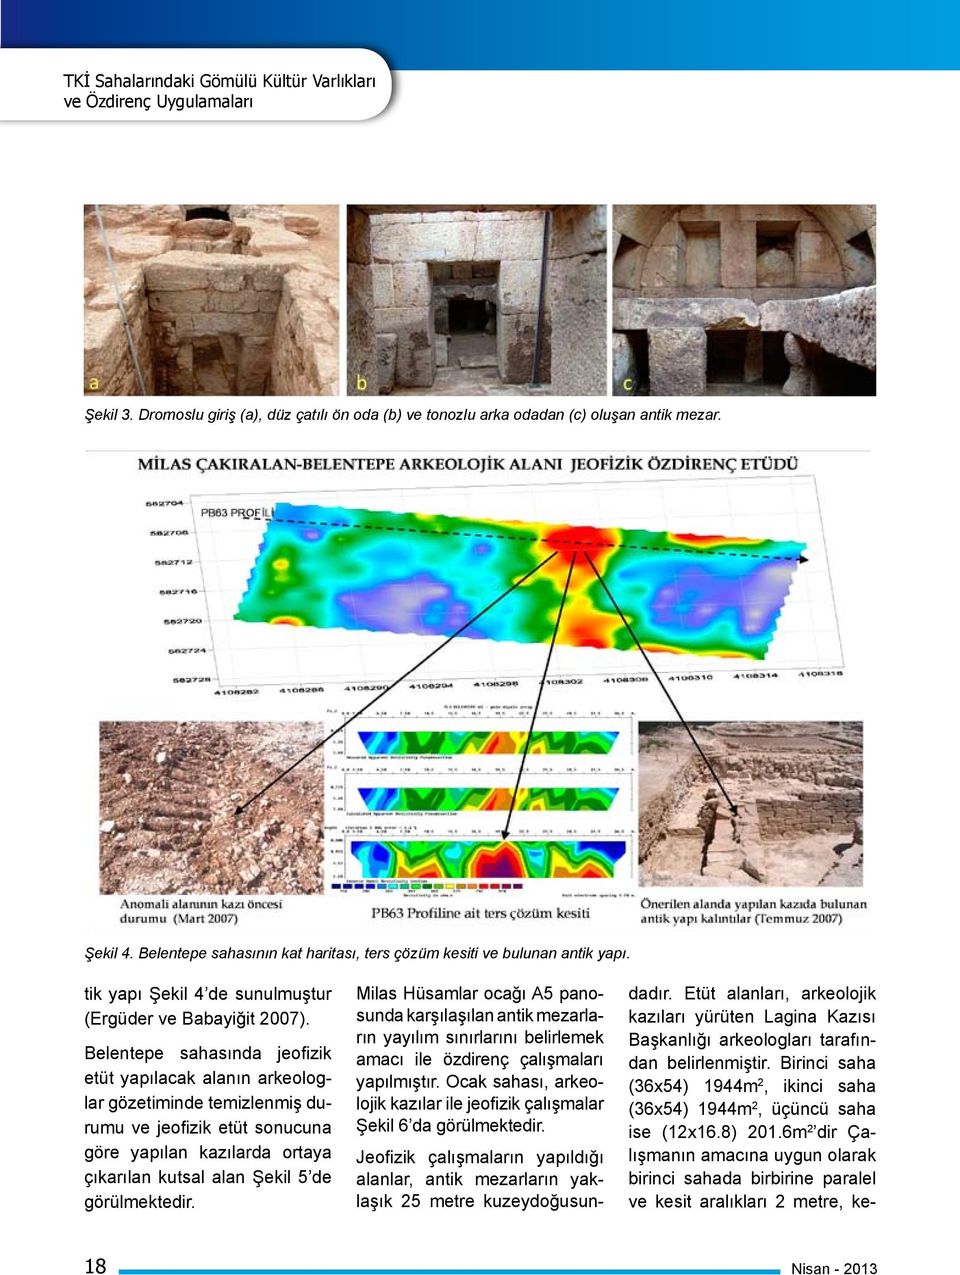 Belentepe sahasında jeofizik etüt yapılacak alanın arkeologlar gözetiminde temizlenmiş durumu ve jeofizik etüt sonucuna göre yapılan kazılarda ortaya çıkarılan kutsal alan Şekil 5 de görülmektedir.